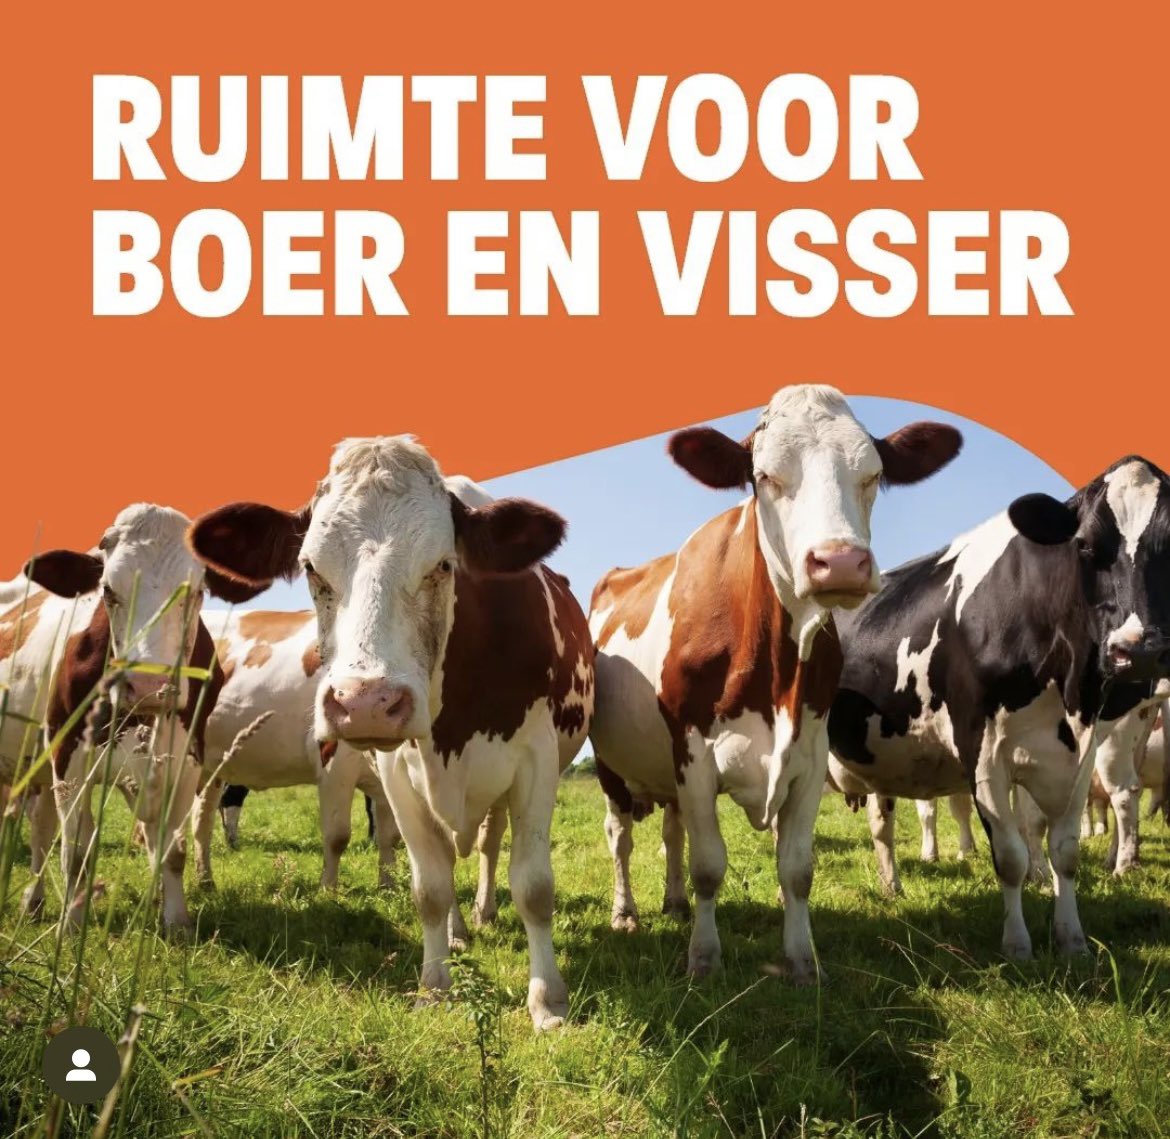 Boeren, tuinders en vissers zijn onmisbaar voor voedselzekerheid in Nederland, Europa en de rest van de wereld. Waardering voor hun belangrijke werk en toekomstperspectief is daarom ook zeker op z’n plaats! Stem daarom 6 juni SGP @hjaruissen! #EP24 #StemChristelijk #RemEuropa